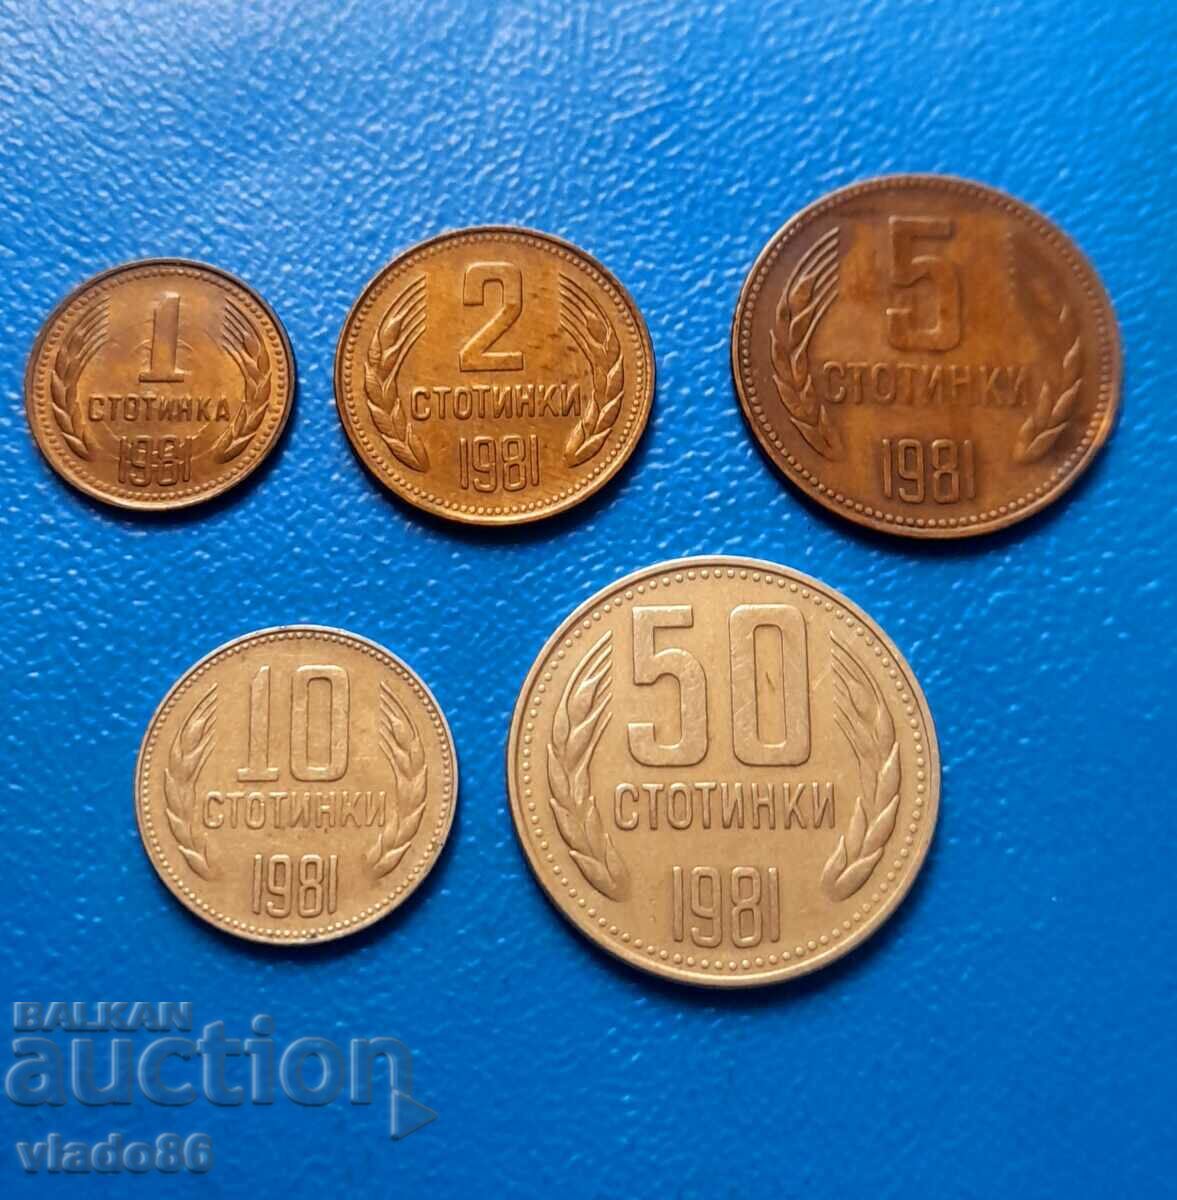 1, 2, 5, 10 και 50 σεντς 1981